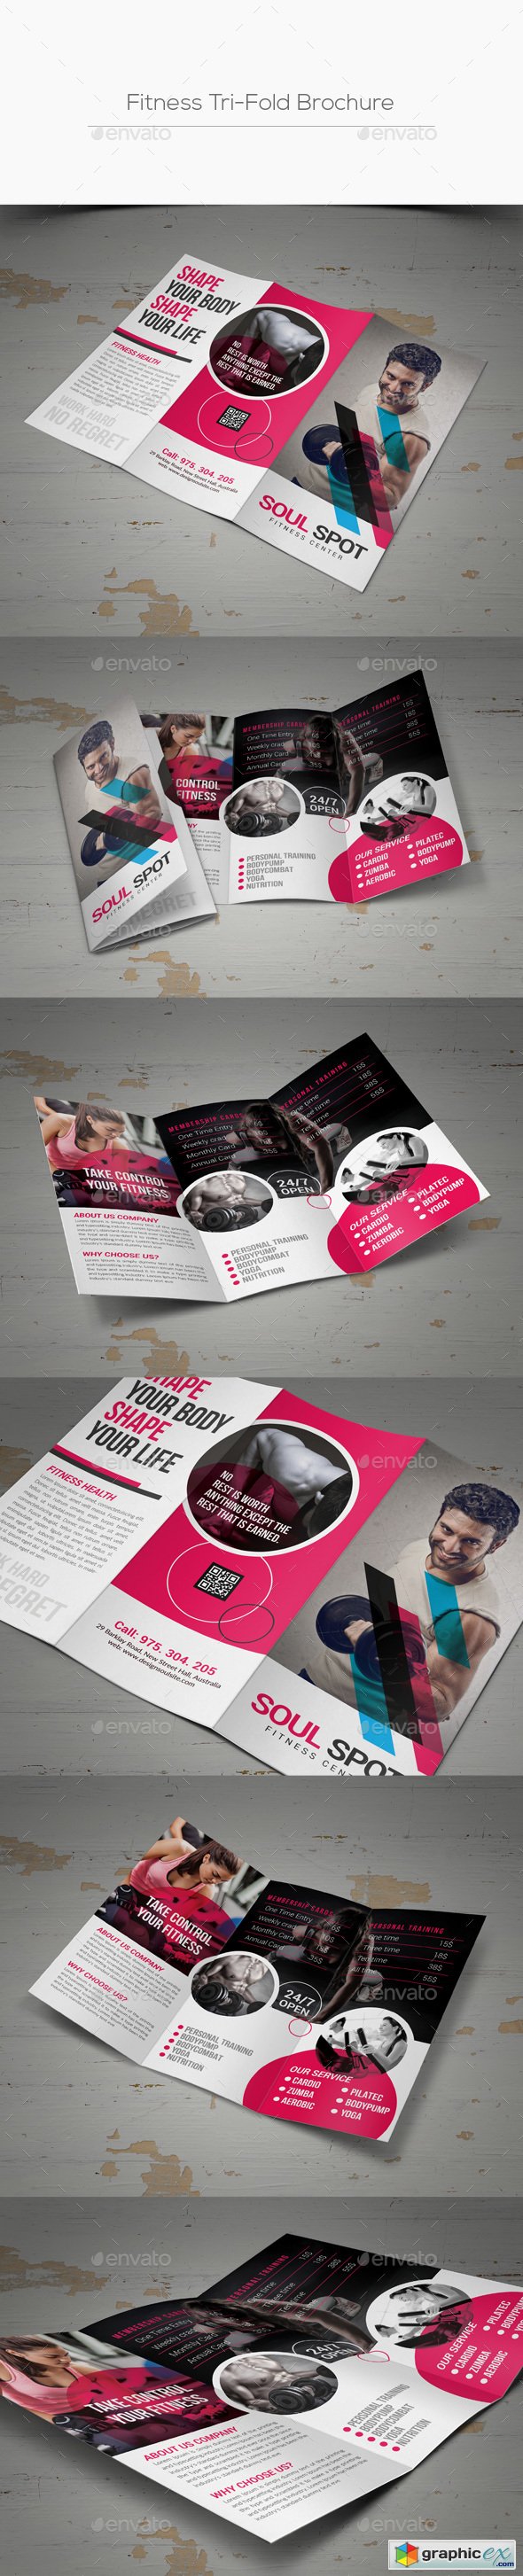 Fitness Tri-Fold Brochure